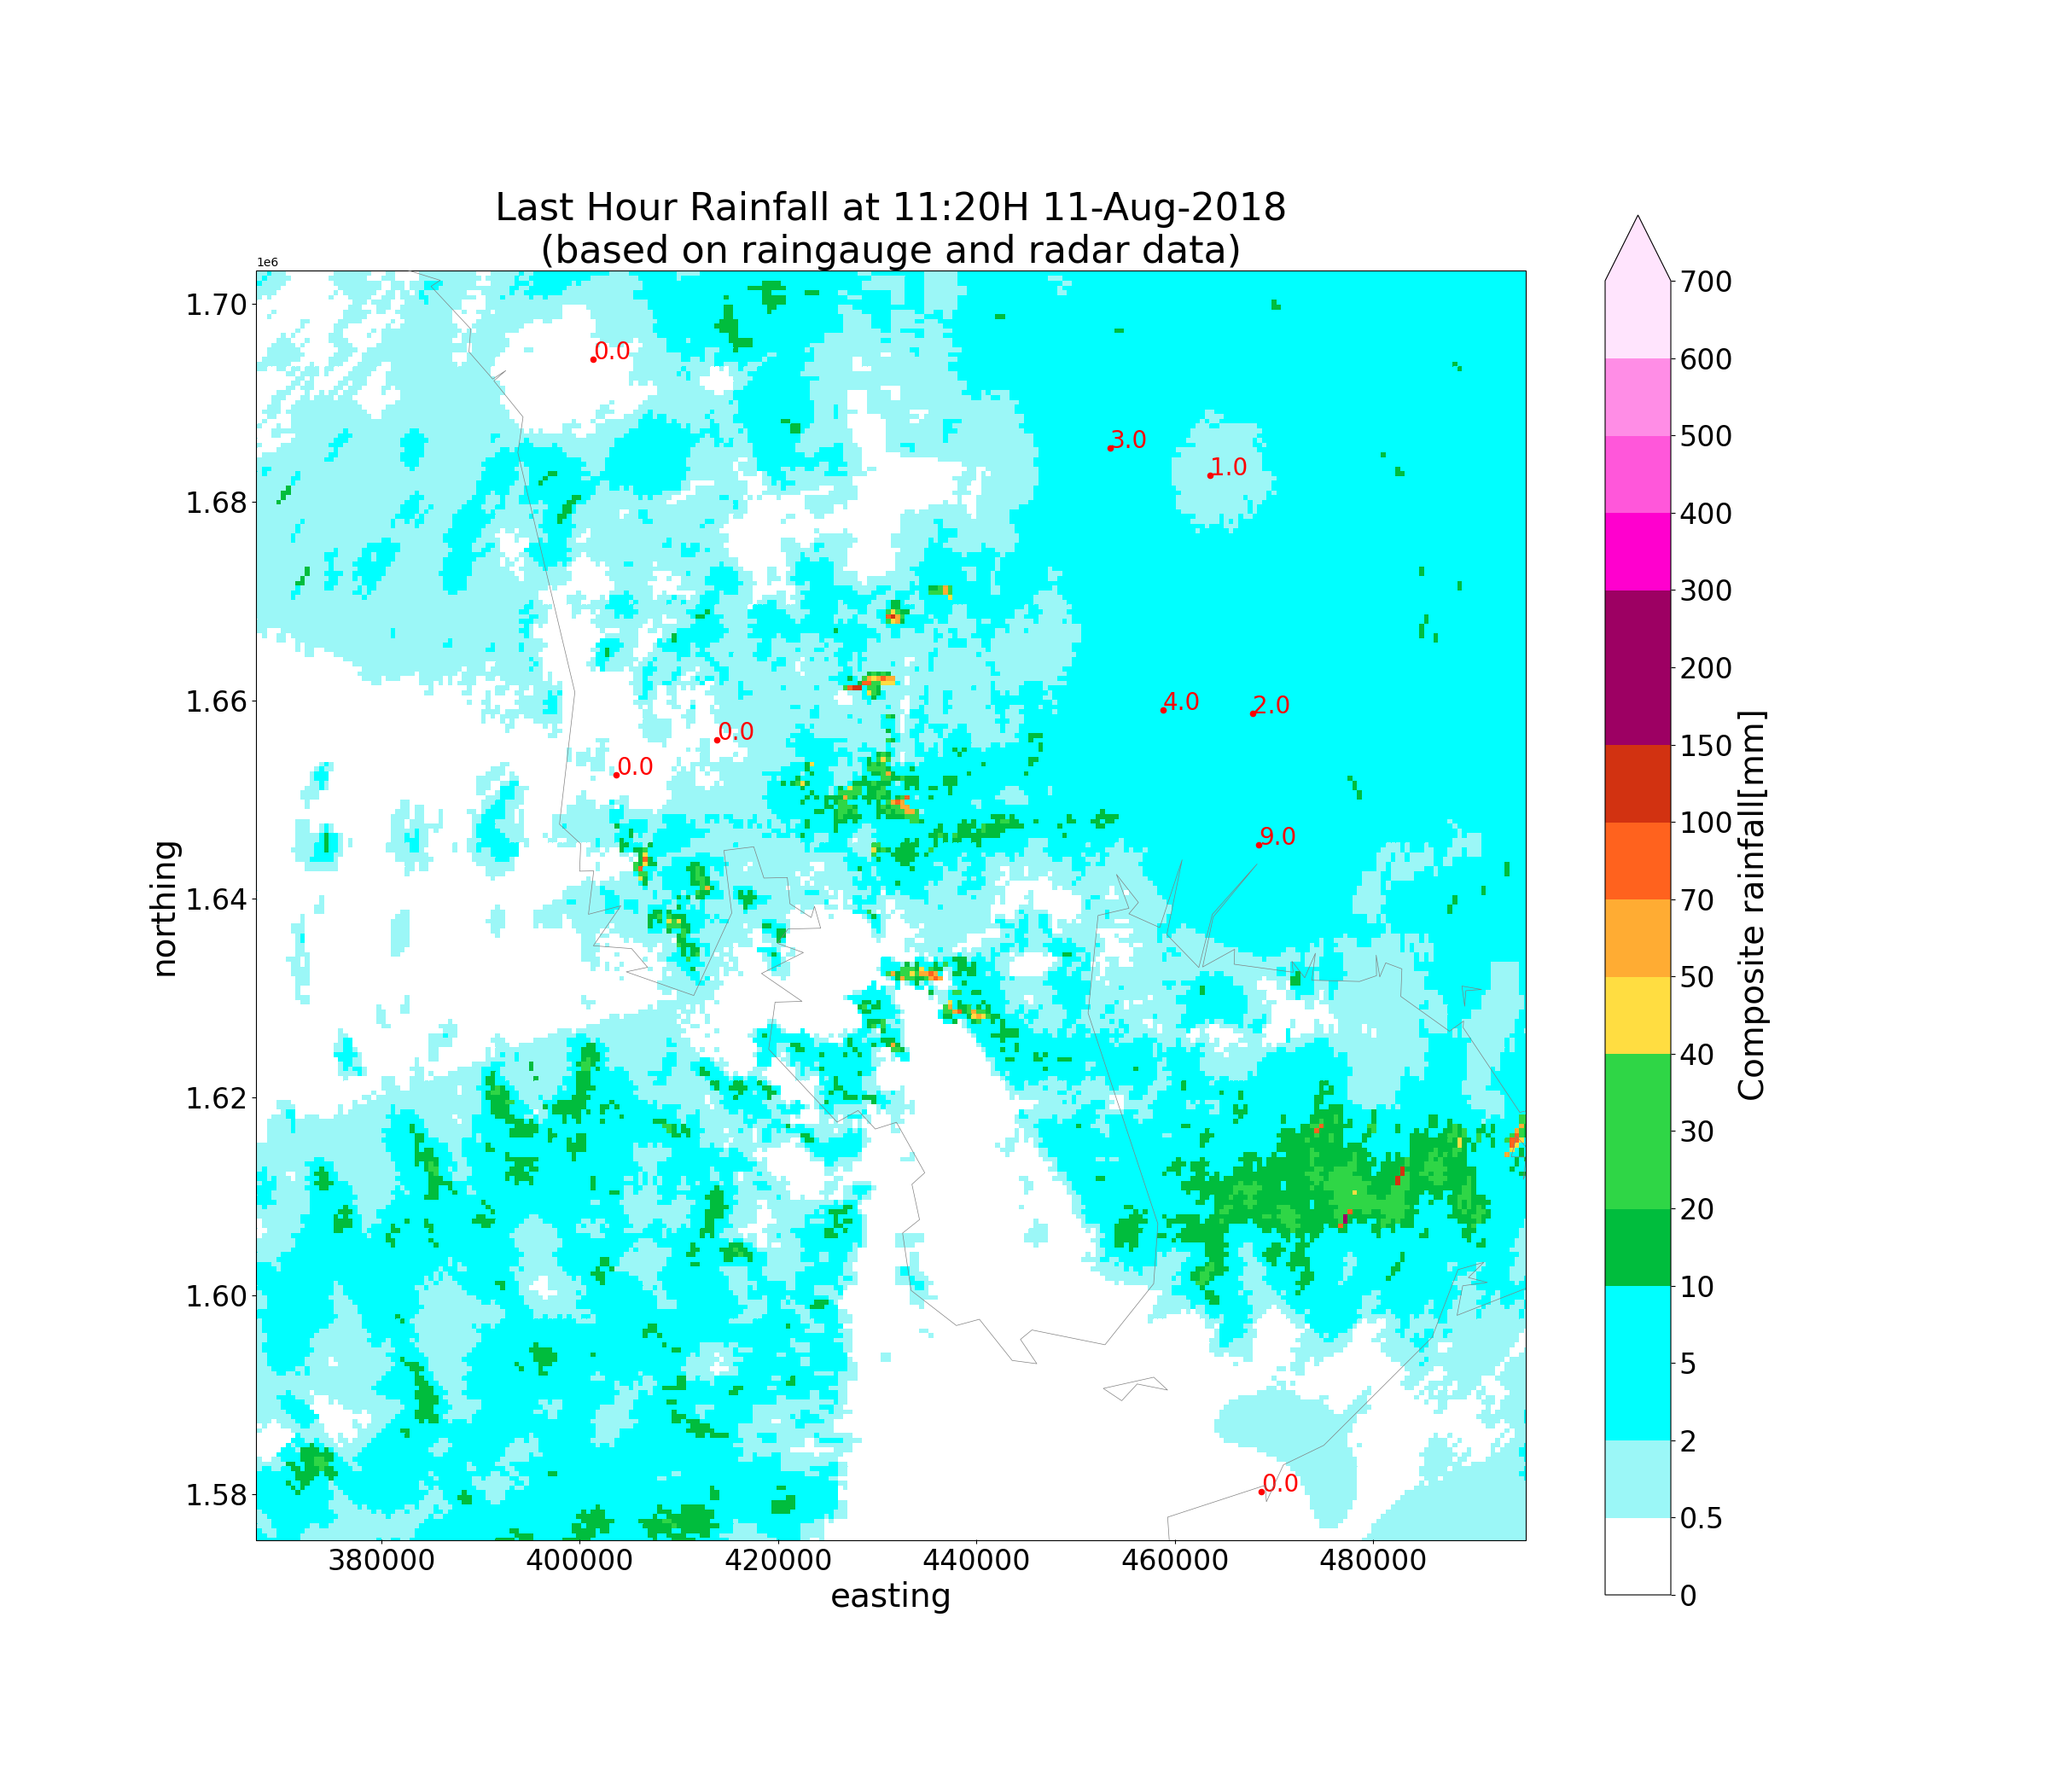 Last Hour Rainfall at 11:20H 11-Aug-2018 (based on raingauge and radar data)